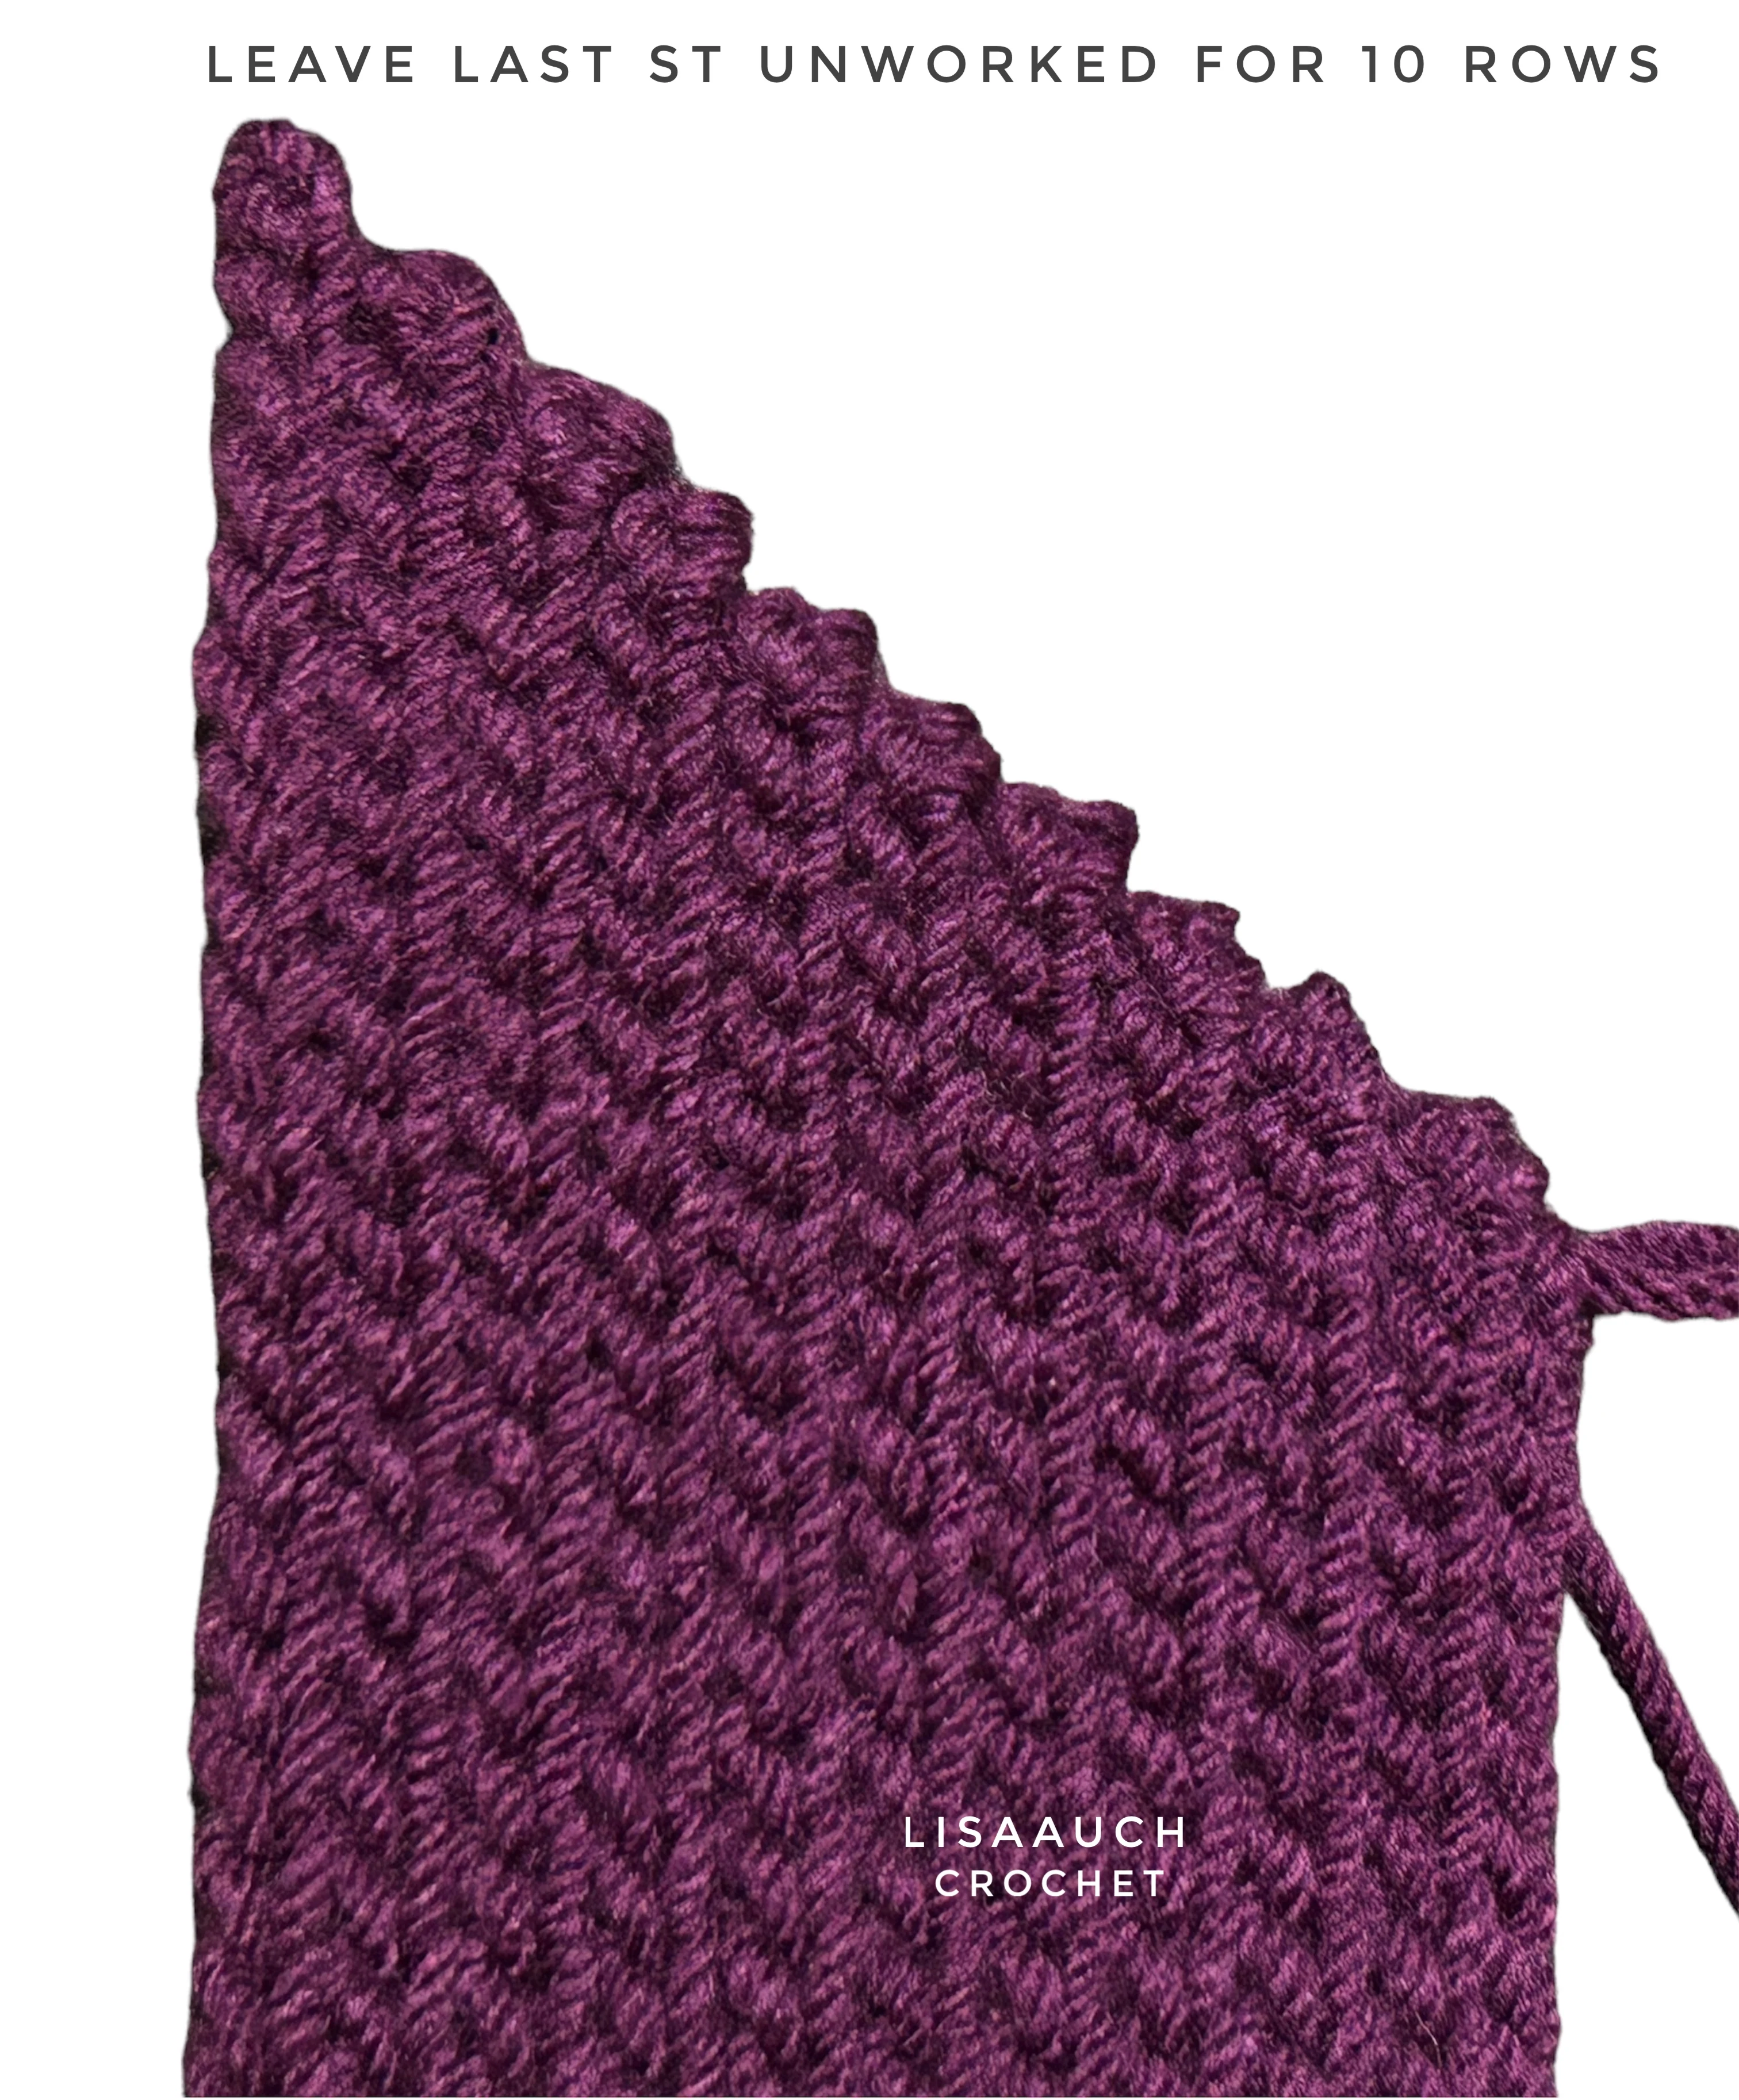 crochet hat- hat crochet pattern free -how to crochet a hat